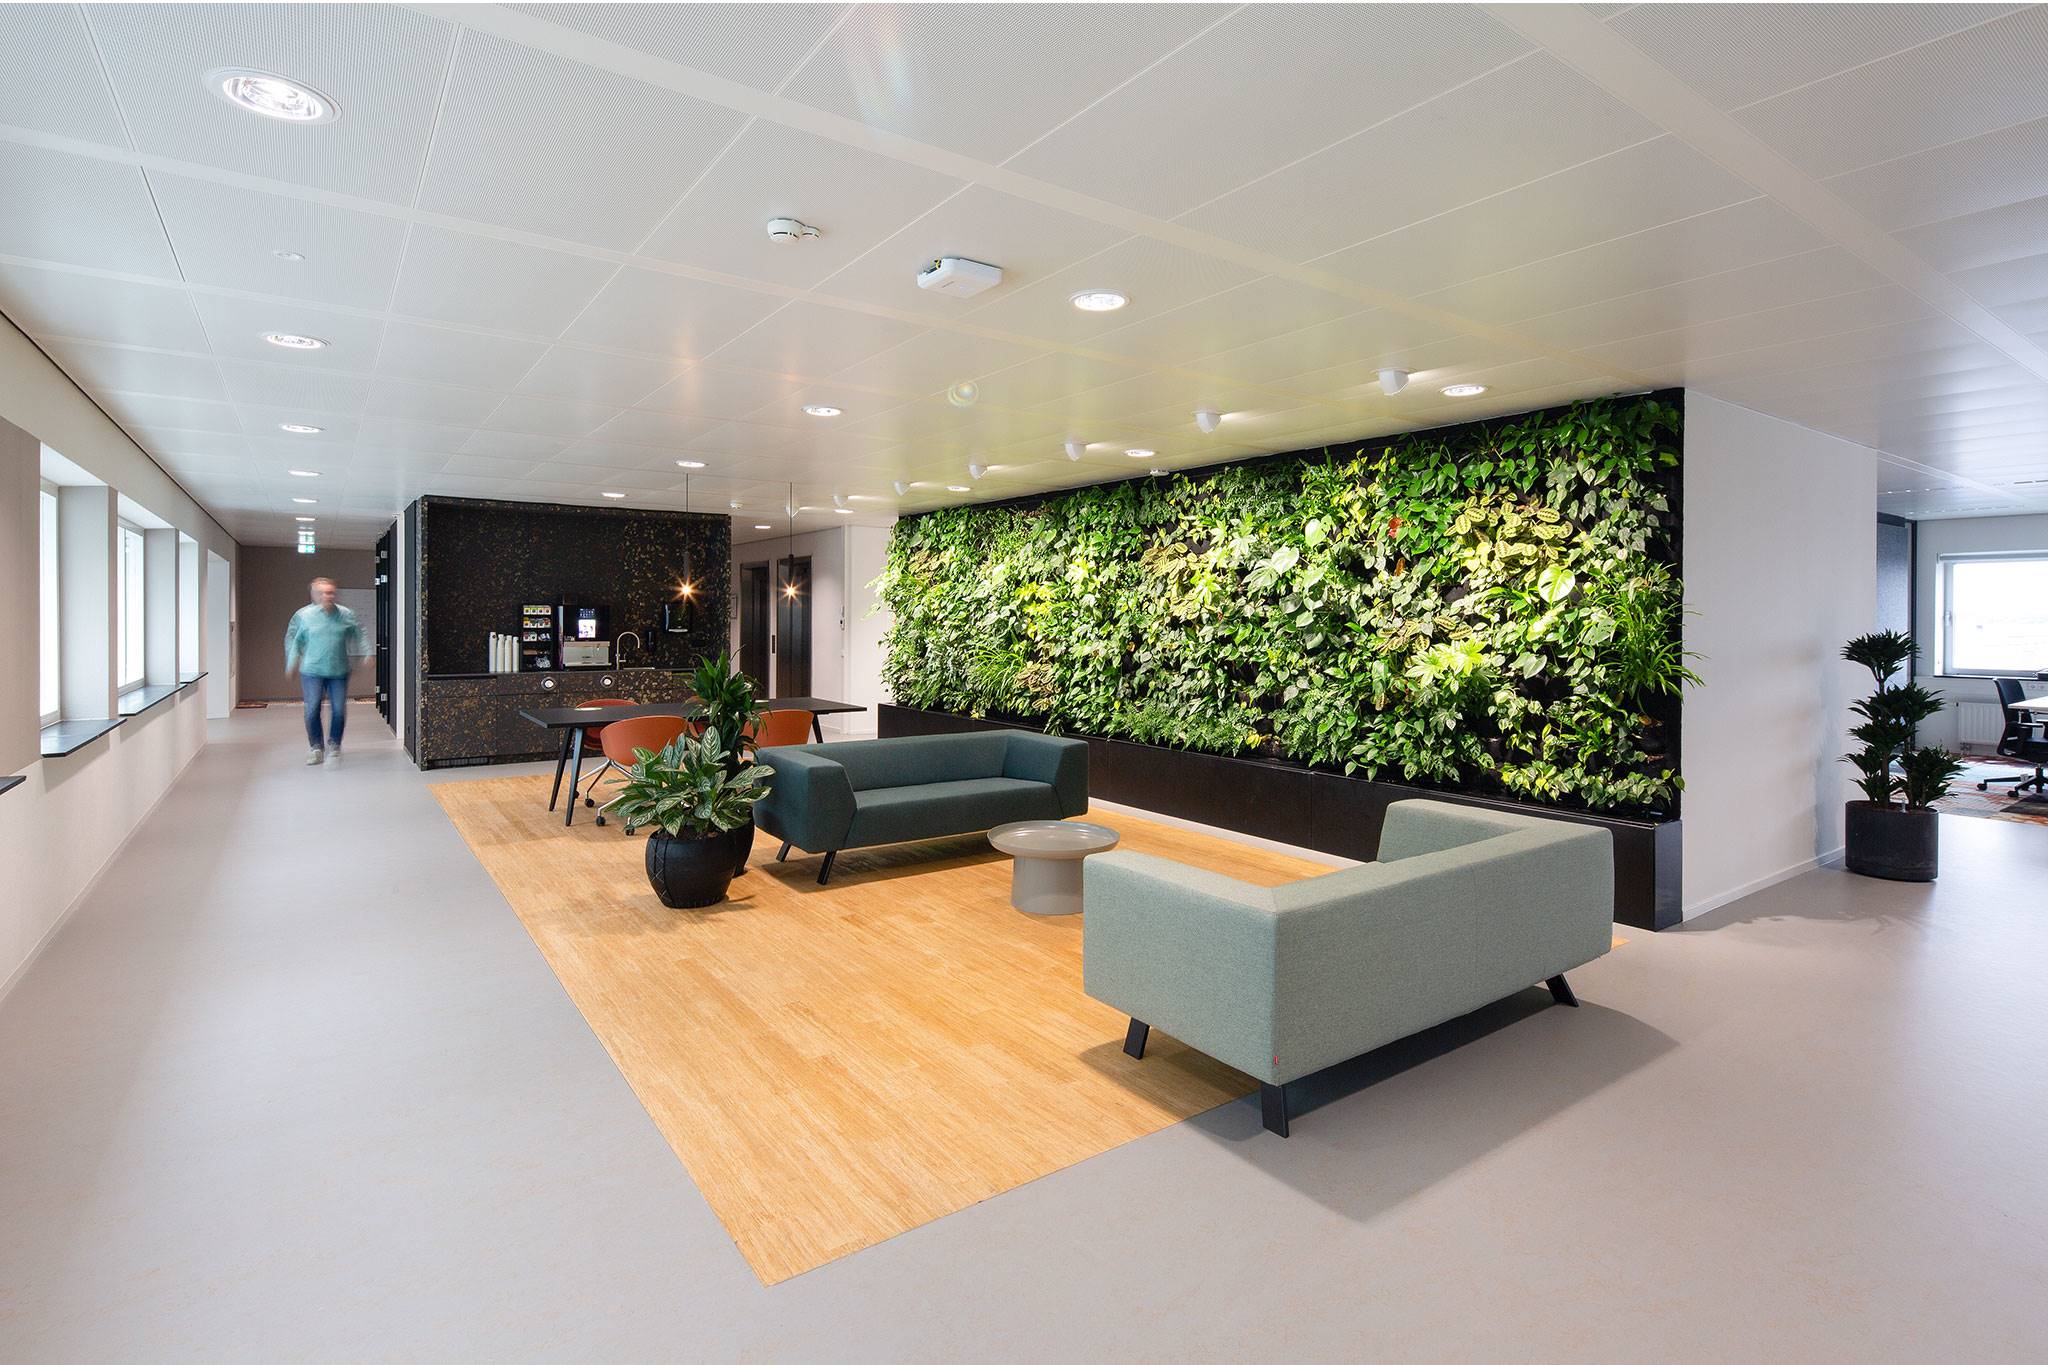 Royal FloraHolland, Aalsmeer - Groene plantenwand in het hoofdkantoor.